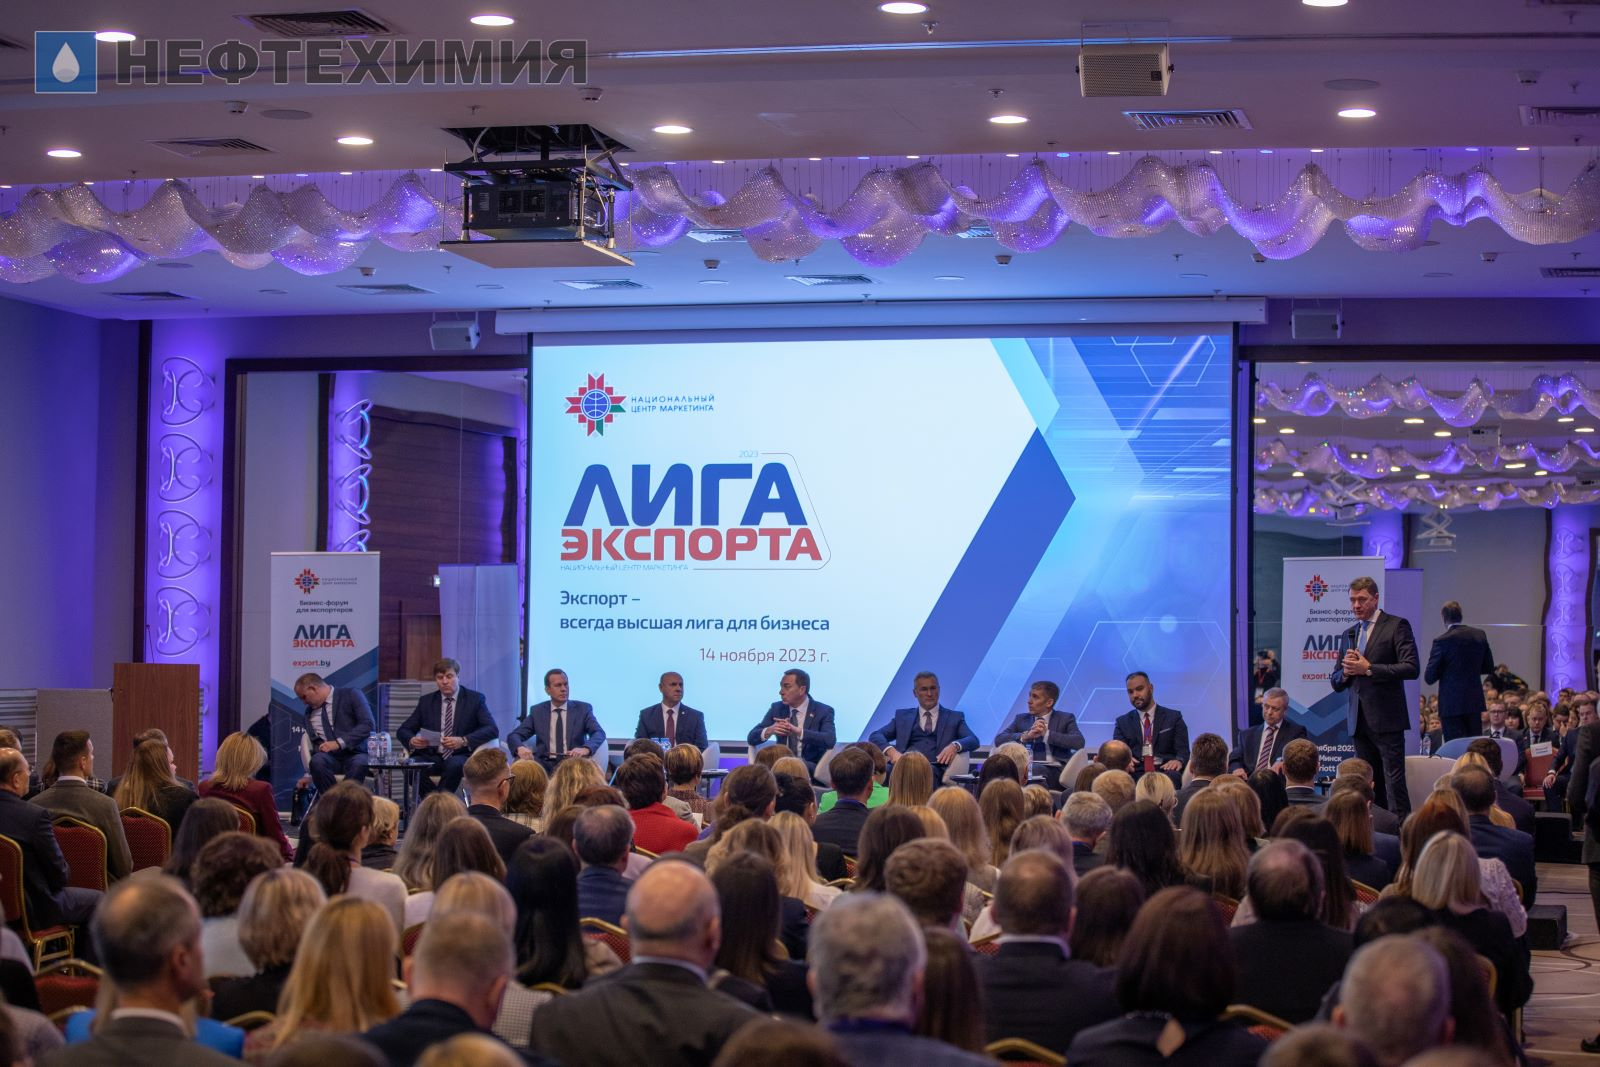 «Лига экспорта» объединила в Минске ведущих экспортеров страны